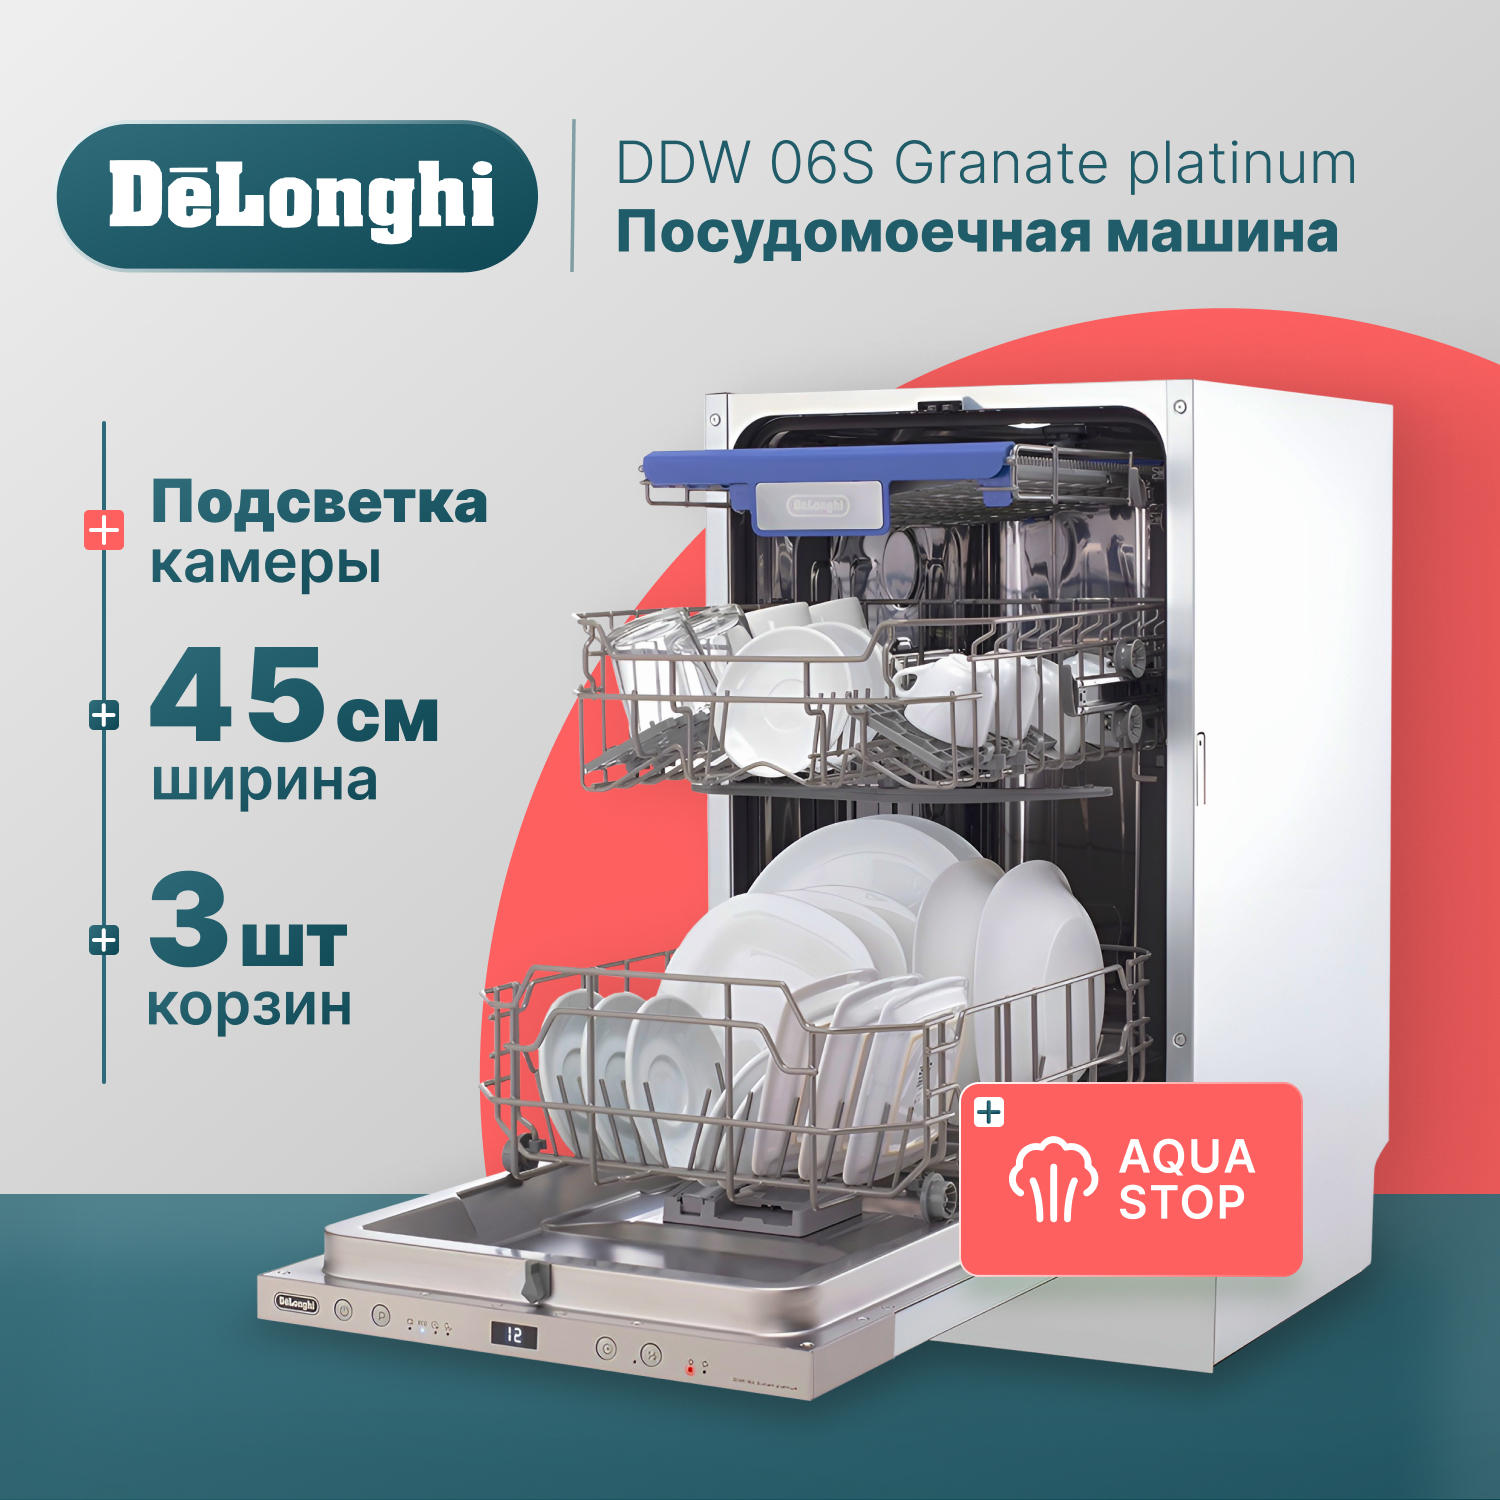 Встраиваемая посудомоечная машина Delonghi DDW06S Granate platinum встраиваемая посудомоечная машина delonghi ddw06f basilia